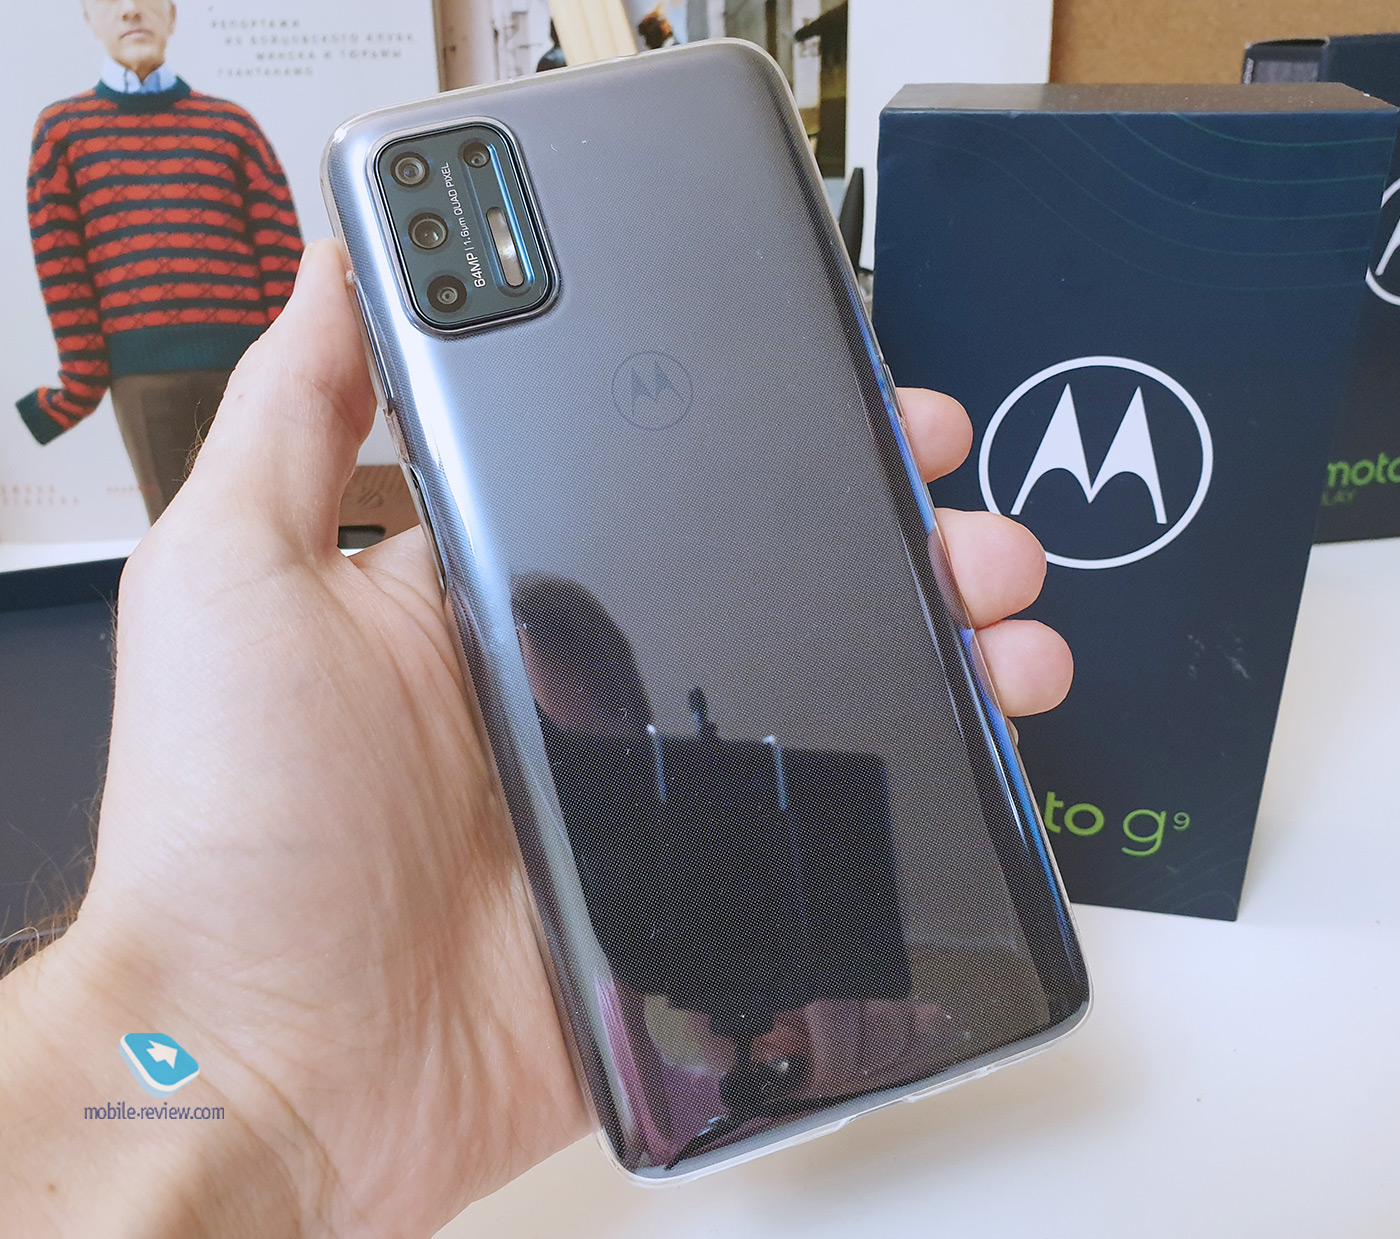  Motorola G9 Plus